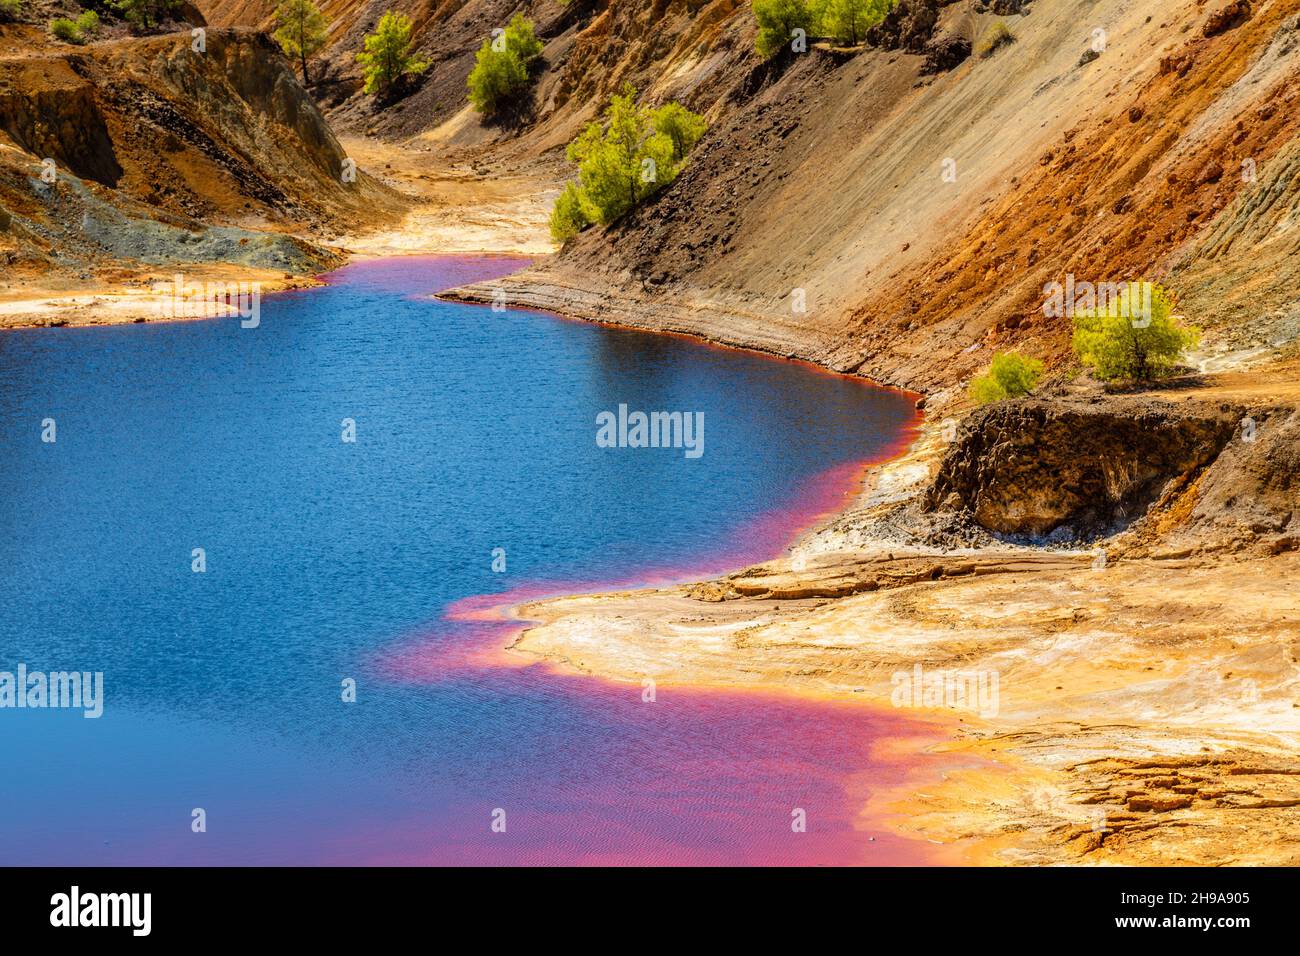 Lac de mine de cuivre Sha, couleur sanglante et fortement pollué, Nicosie, Chypre Banque D'Images